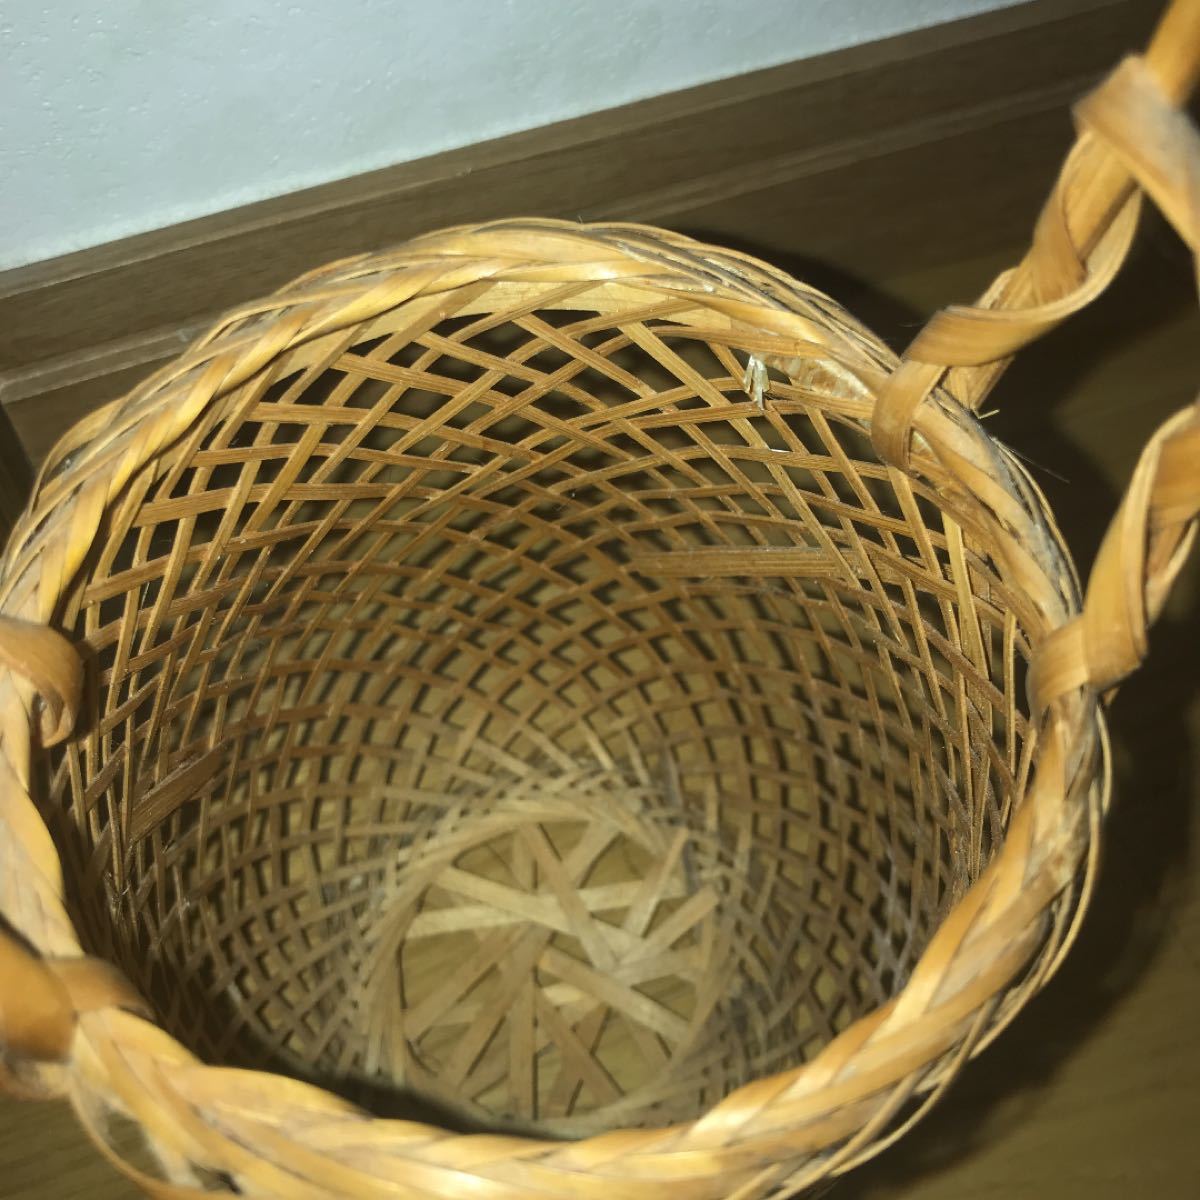 竹籠